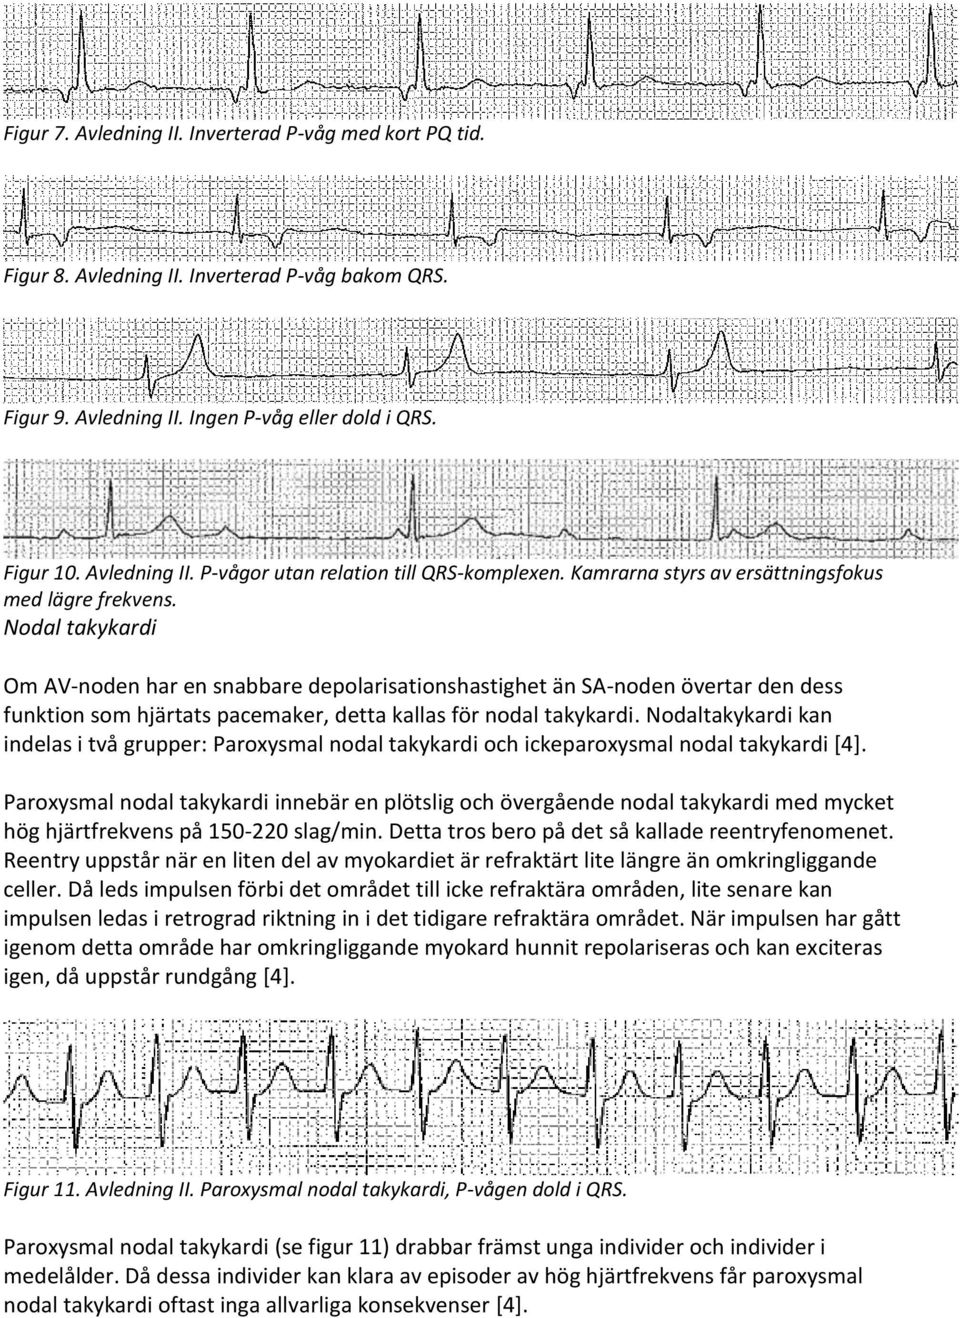 Nodal takykardi Om AV-noden har en snabbare depolarisationshastighet än SA-noden övertar den dess funktion som hjärtats pacemaker, detta kallas för nodal takykardi.